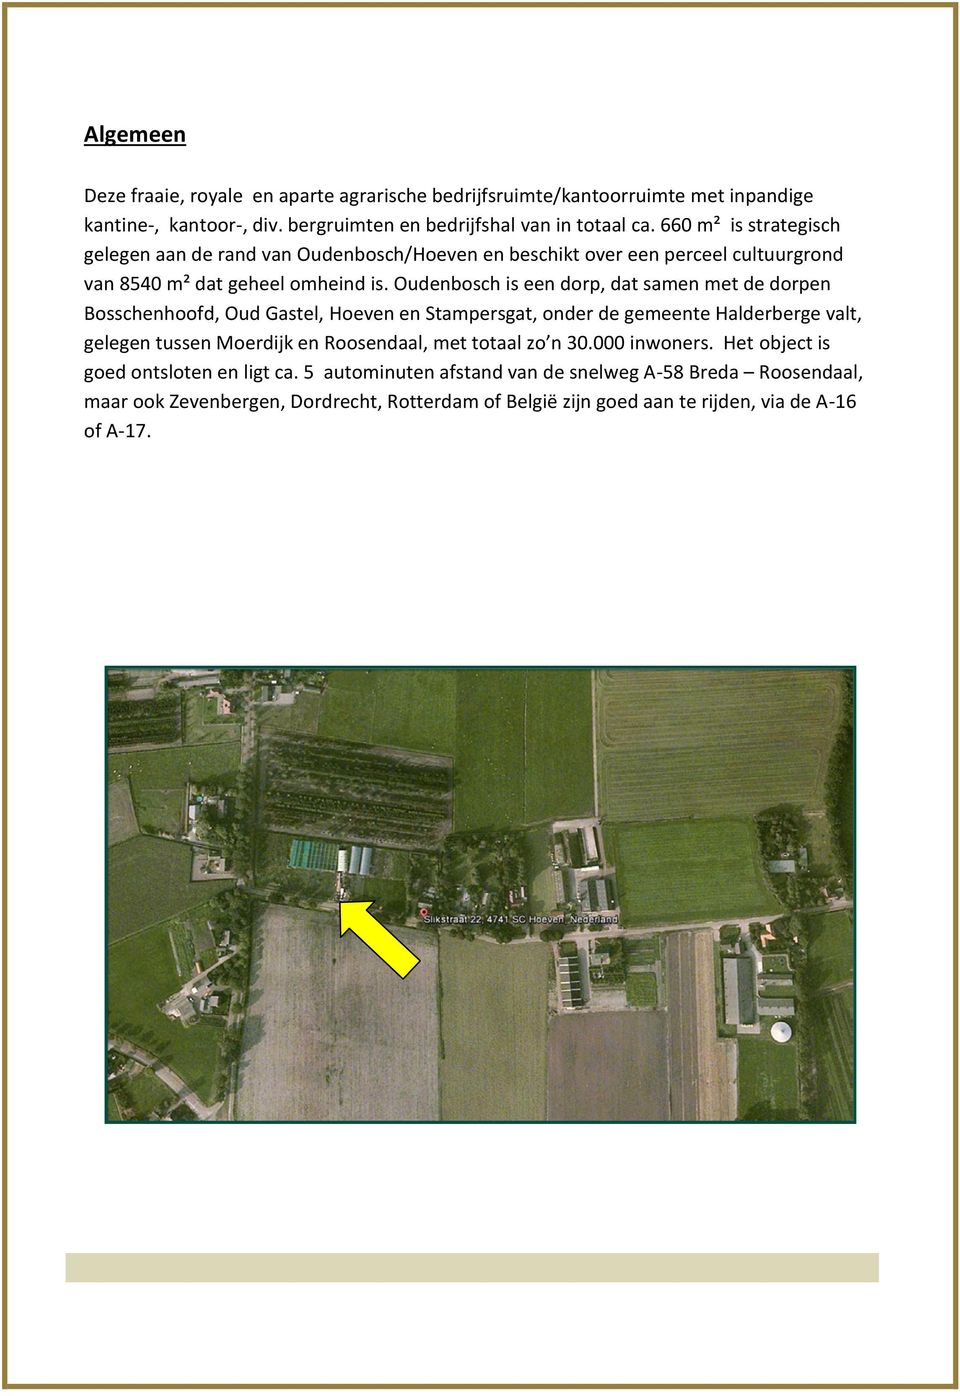 Oudenbosch is een dorp, dat samen met de dorpen Bosschenhoofd, Oud Gastel, Hoeven en Stampersgat, onder de gemeente Halderberge valt, gelegen tussen Moerdijk en Roosendaal, met